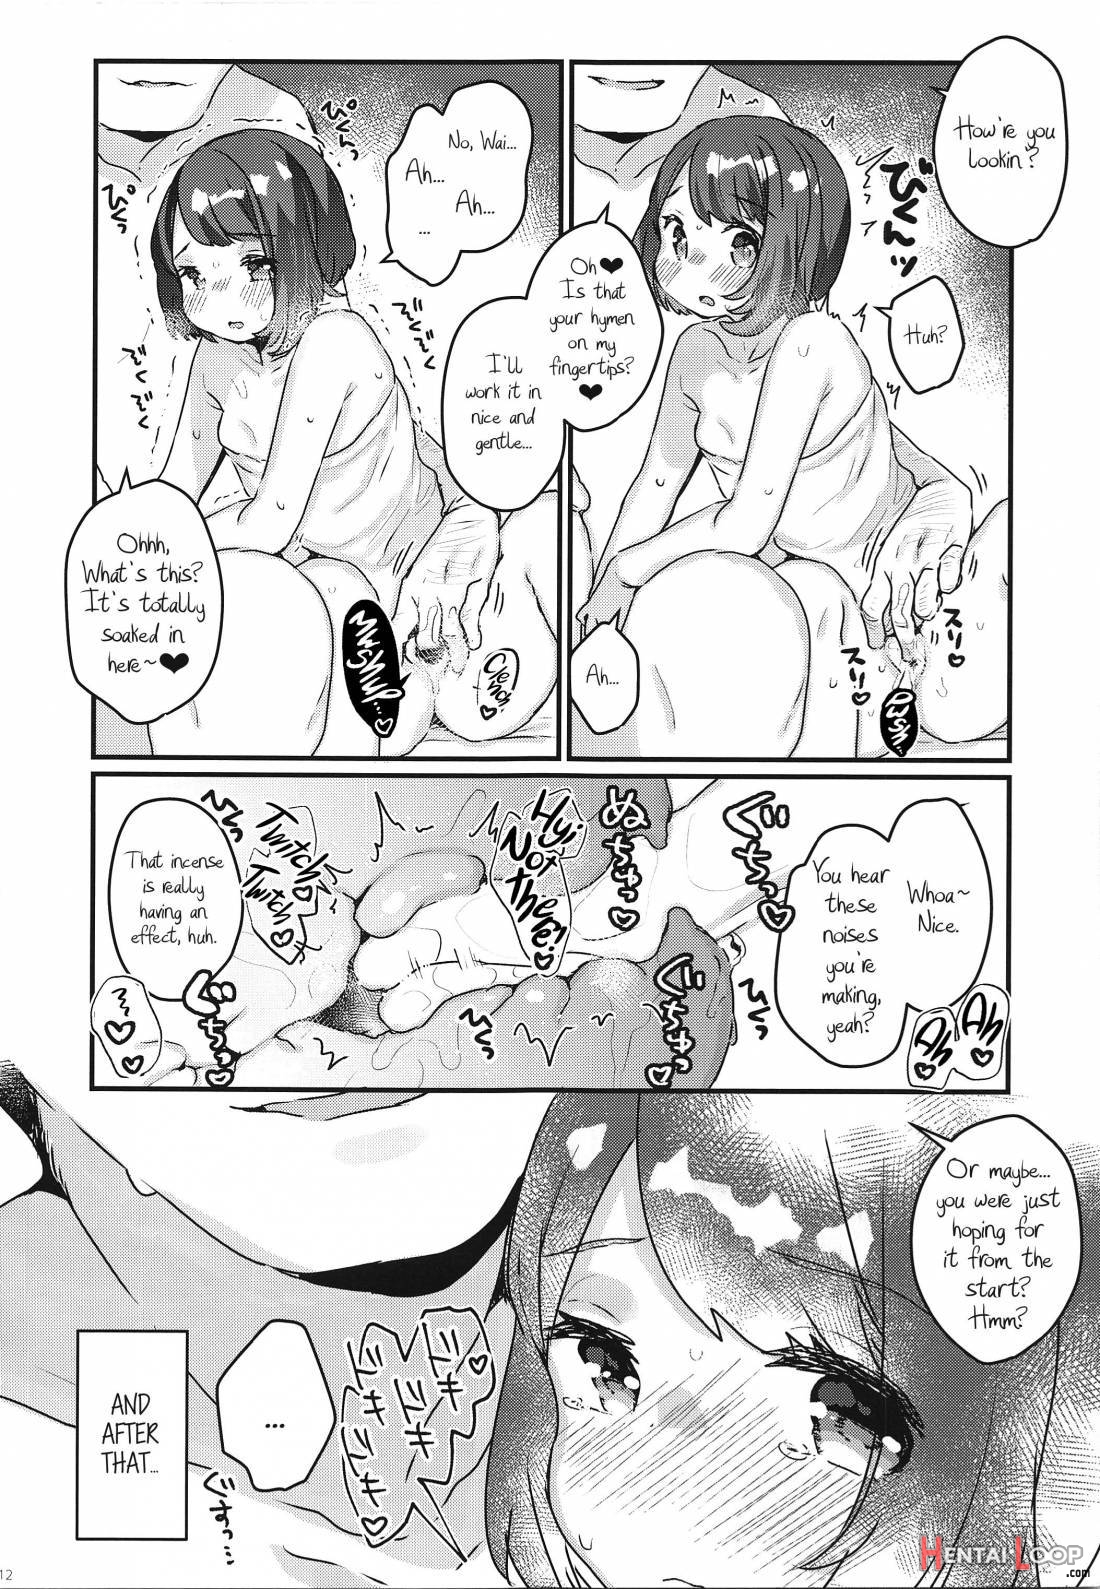 "datte Fuku, Taka Iindamon" page 9